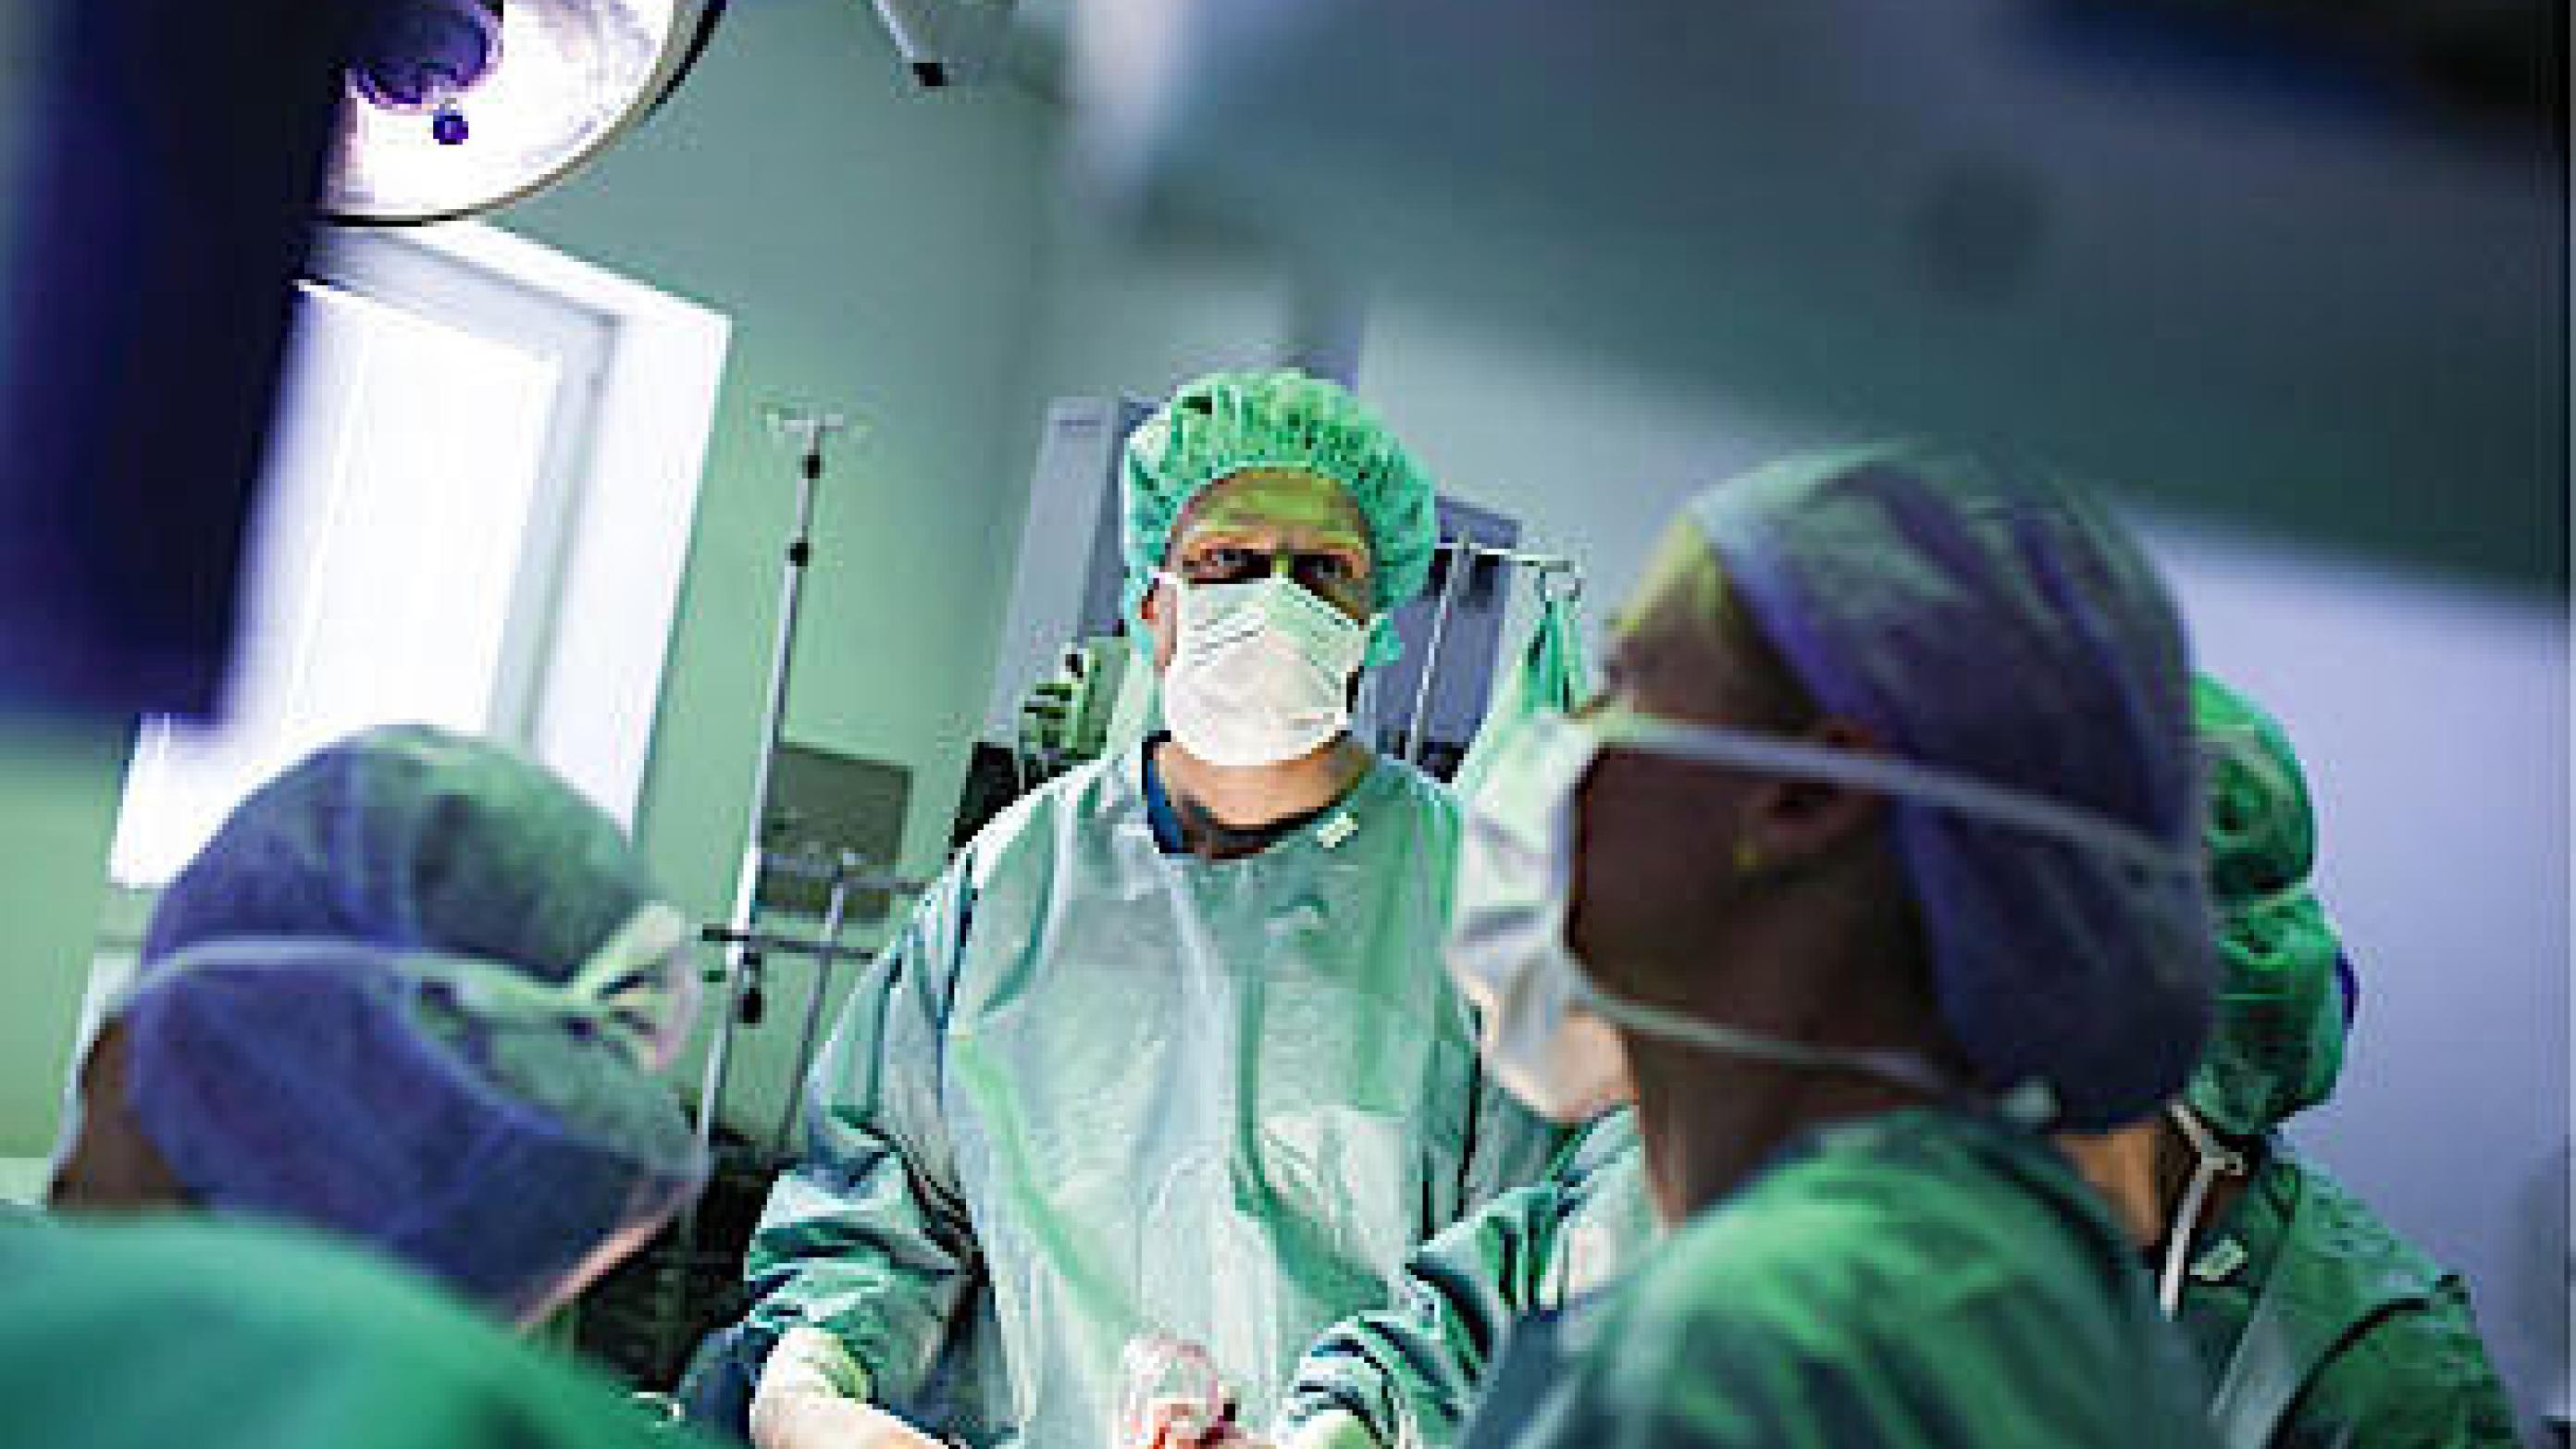 Dream Team-studerende assisterer ved en laparoskopisk operation. Foto: Lars Kruse, Aarhus Universitet.